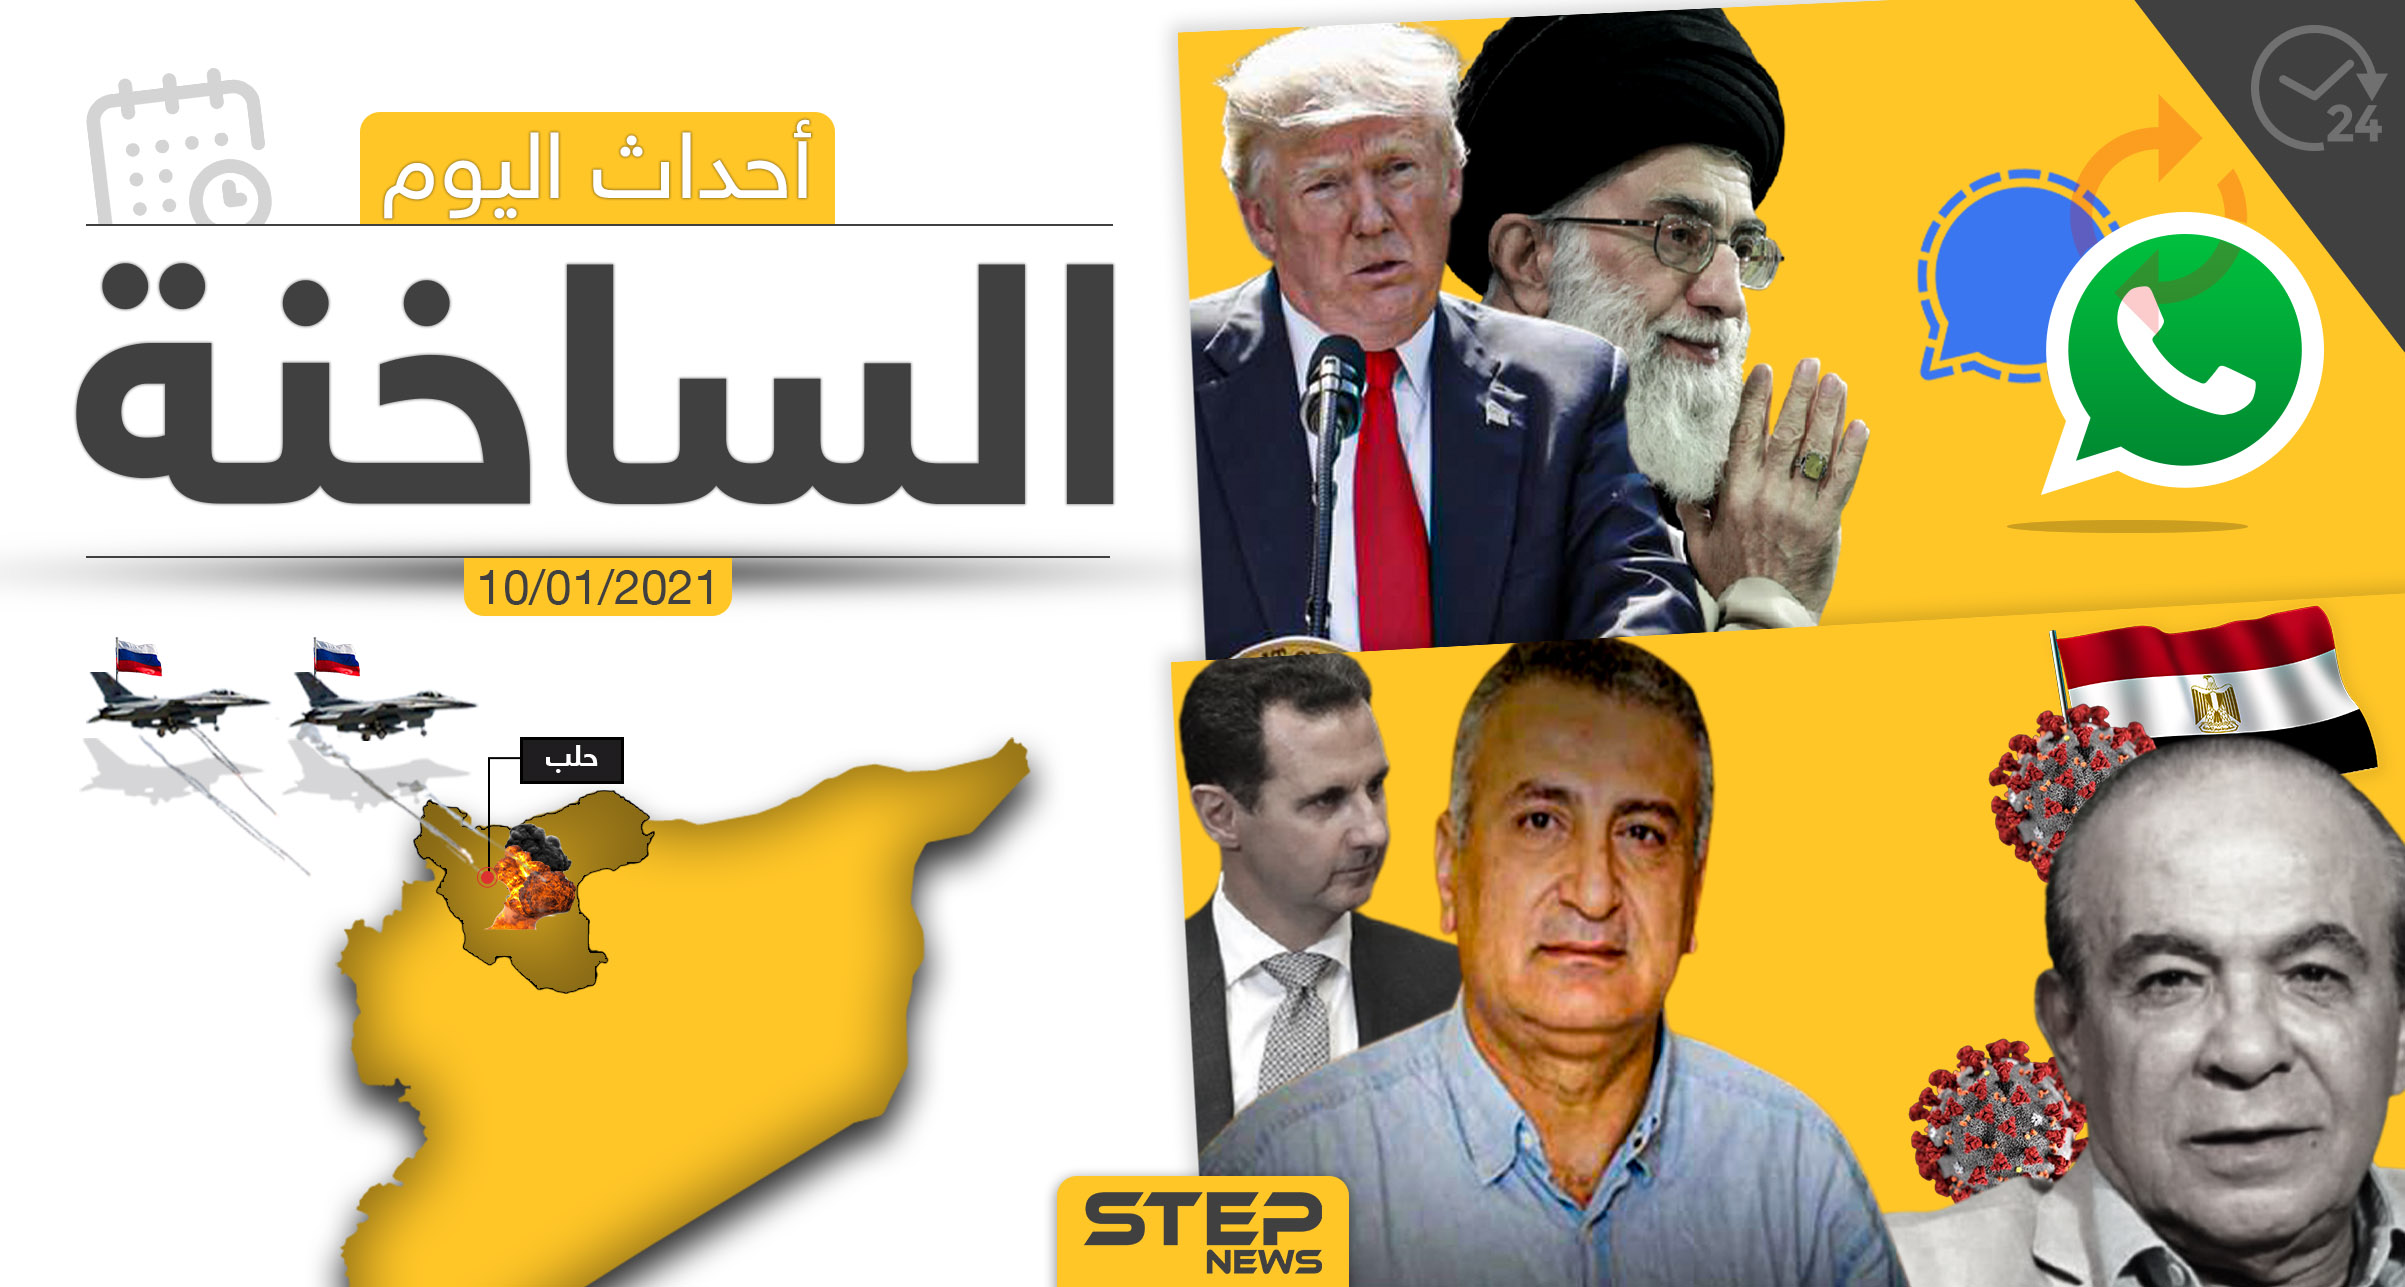 أهم أخبار اليوم في سوريا والعالم